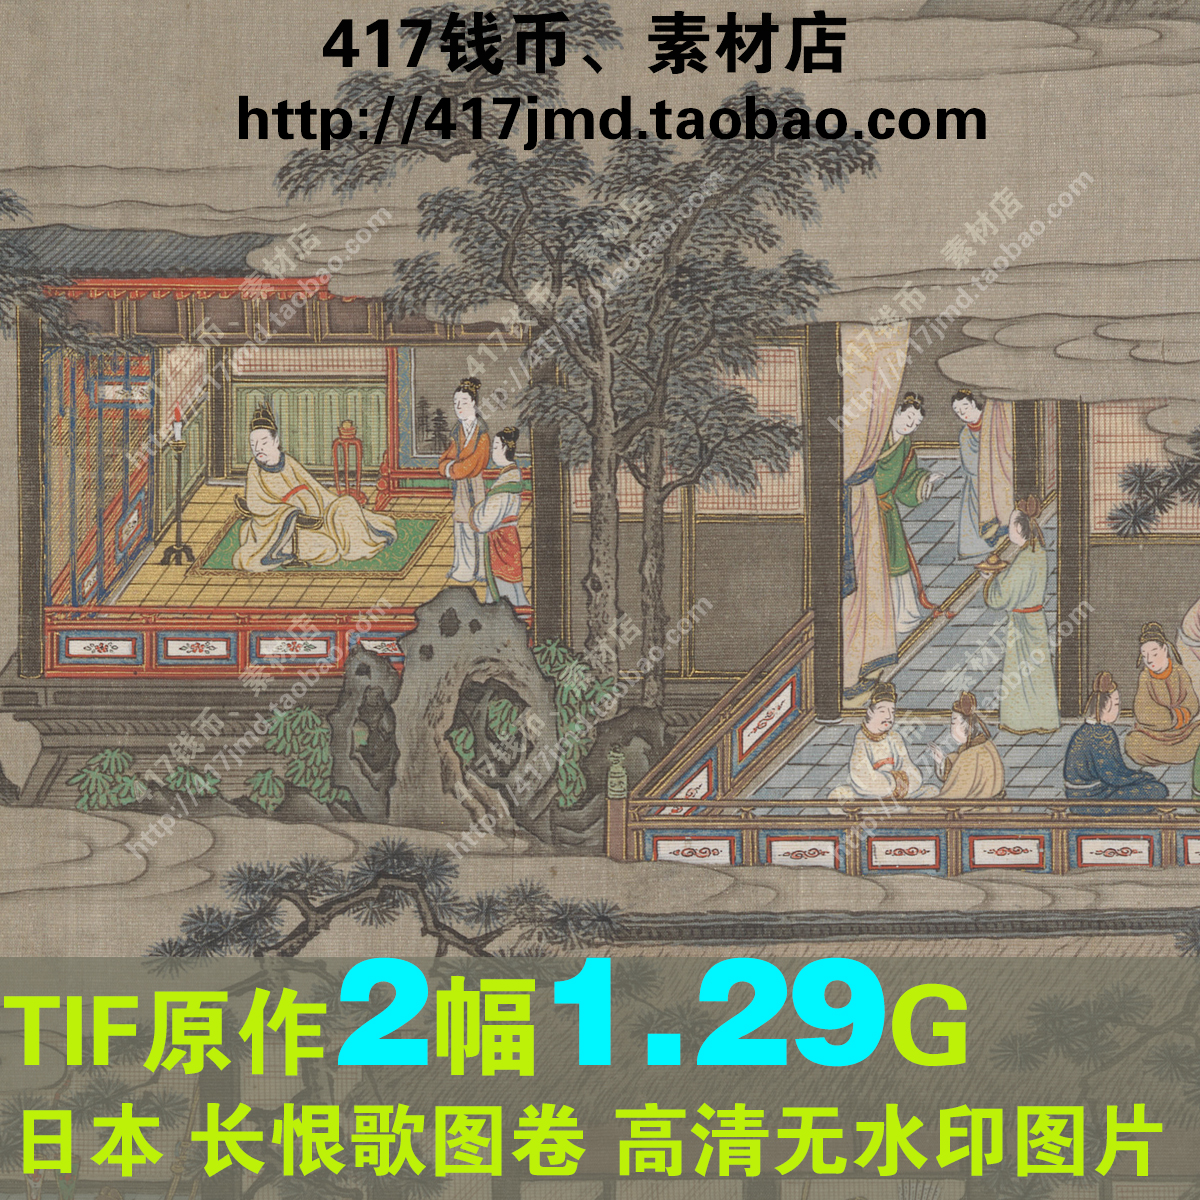 [古早图 图谱]江户时期 狩野山雪 长恨歌图卷 图片临摹喷绘素材